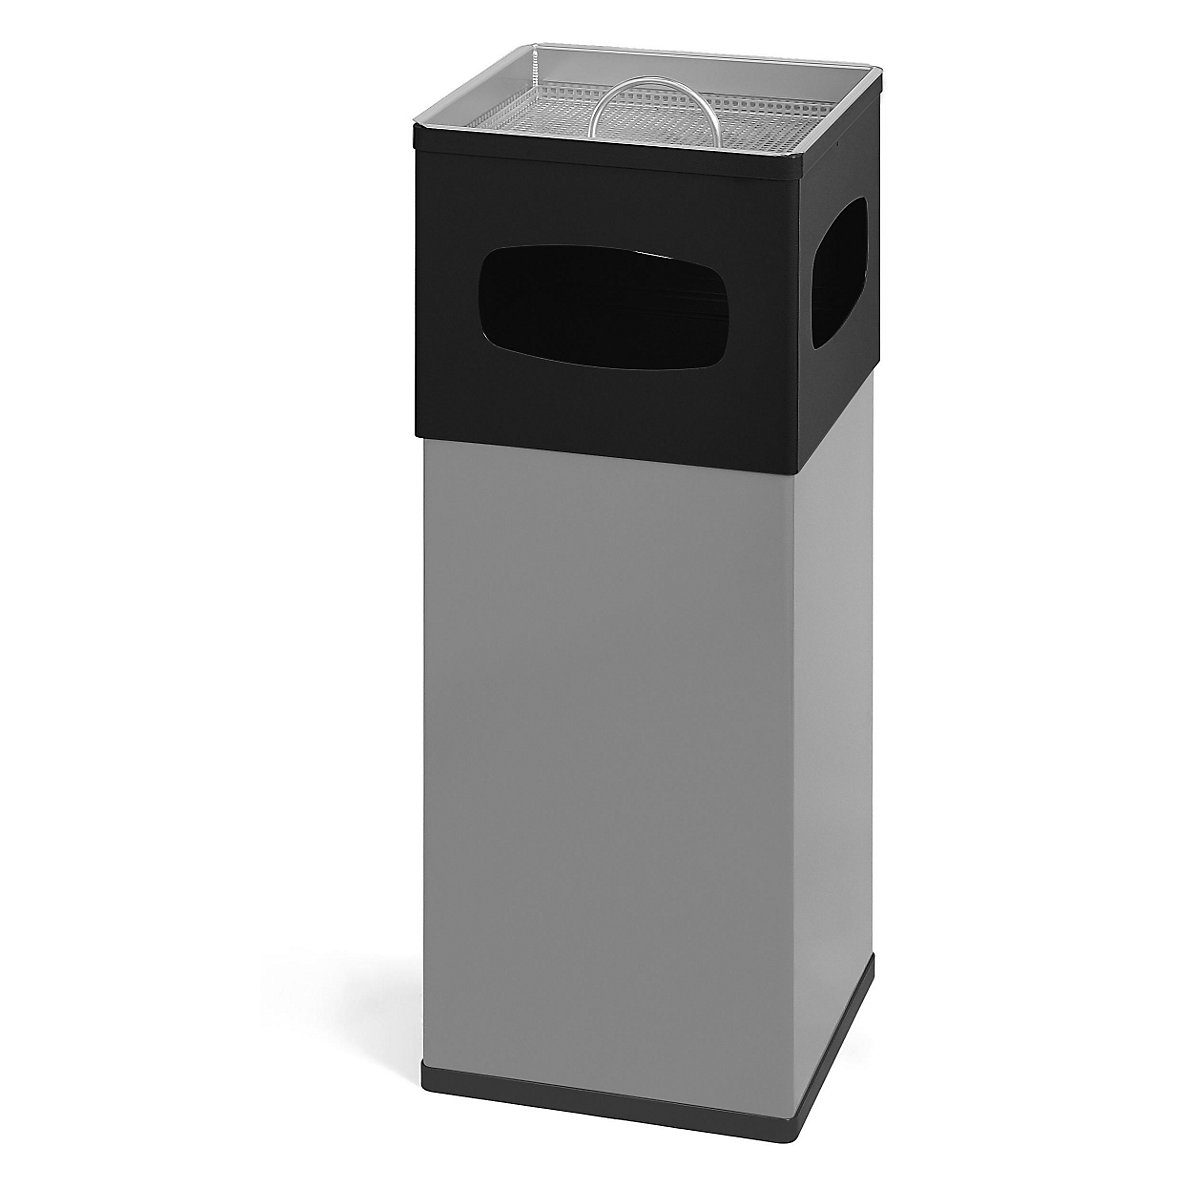 Combiné cendrier-poubelle en aluminium, capacité 50 l, l x h x p 300 x 820 x 300 mm, argent / noir-1